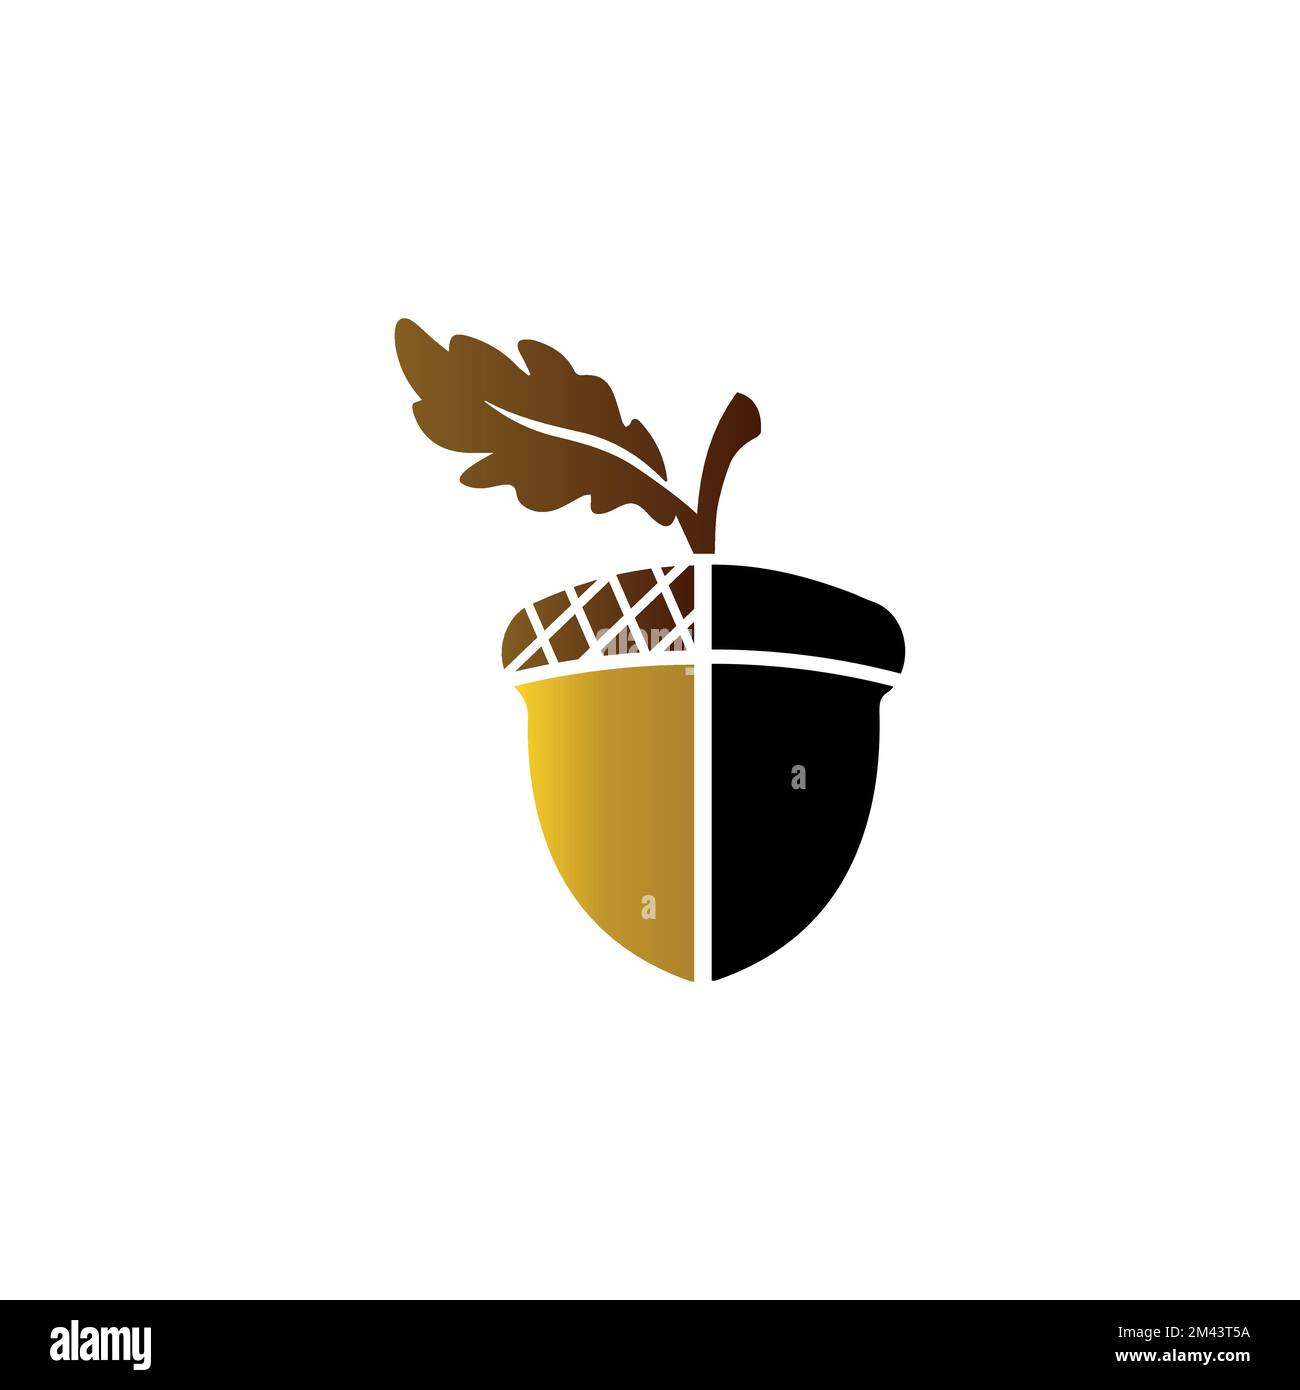 Creative Acorn Concept Logo Design Template, Acorn con icona foglia di quercia vector.EPS 10 Illustrazione Vettoriale